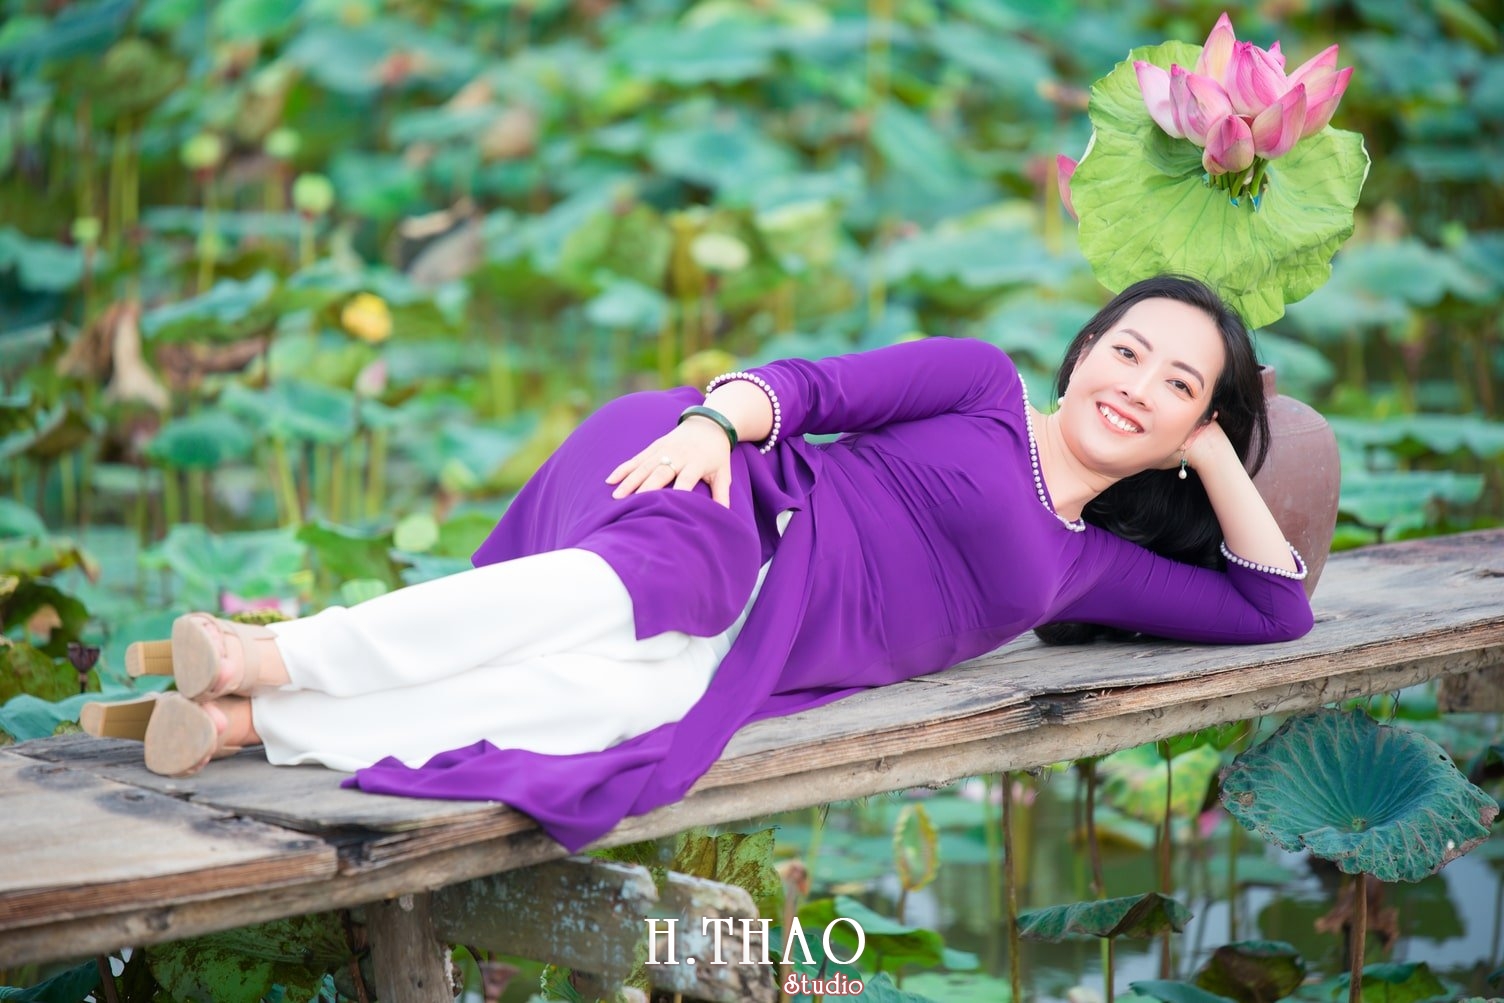 Anh Hoa sen tam da 5 - 39 cách tạo dáng chụp ảnh với hoa sen tuyệt đẹp - HThao Studio